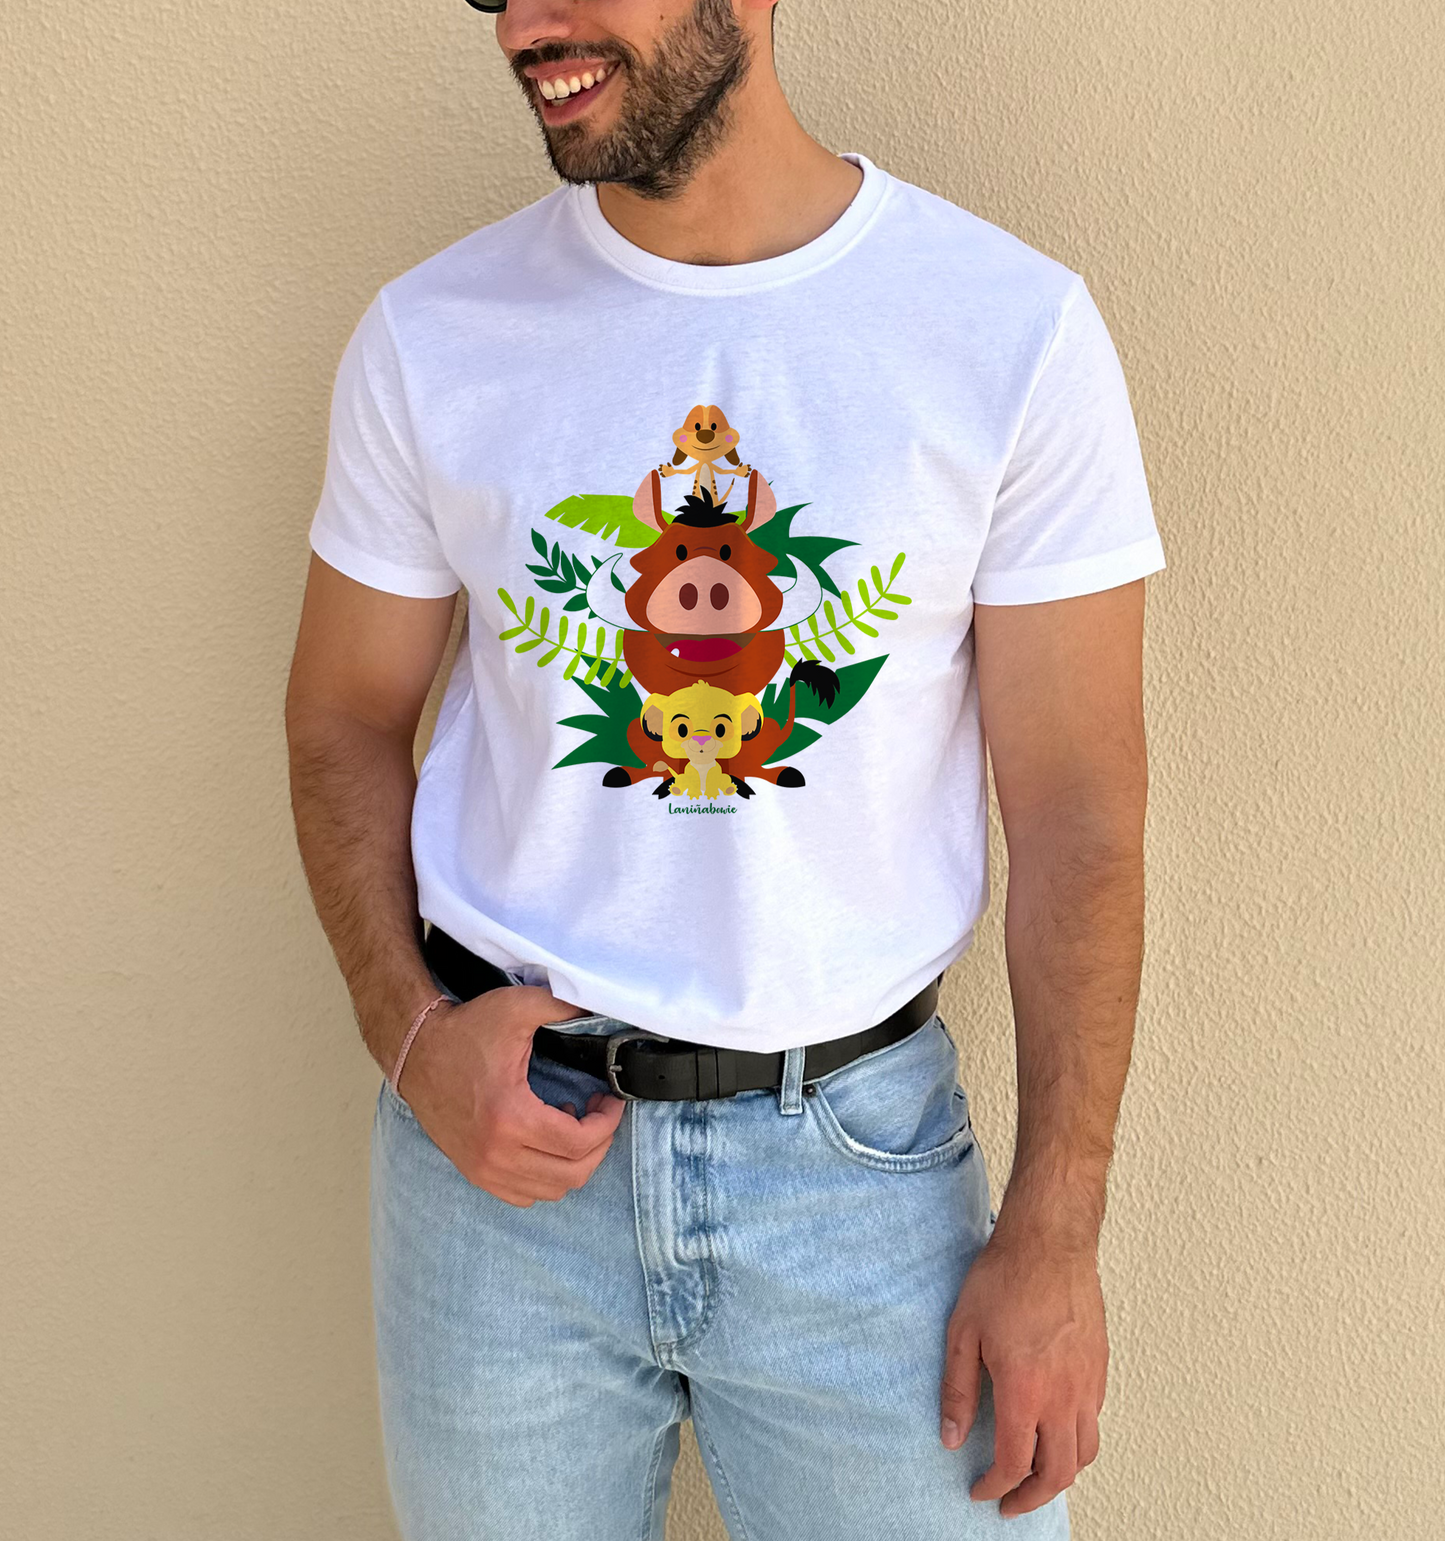 Camiseta Rey León